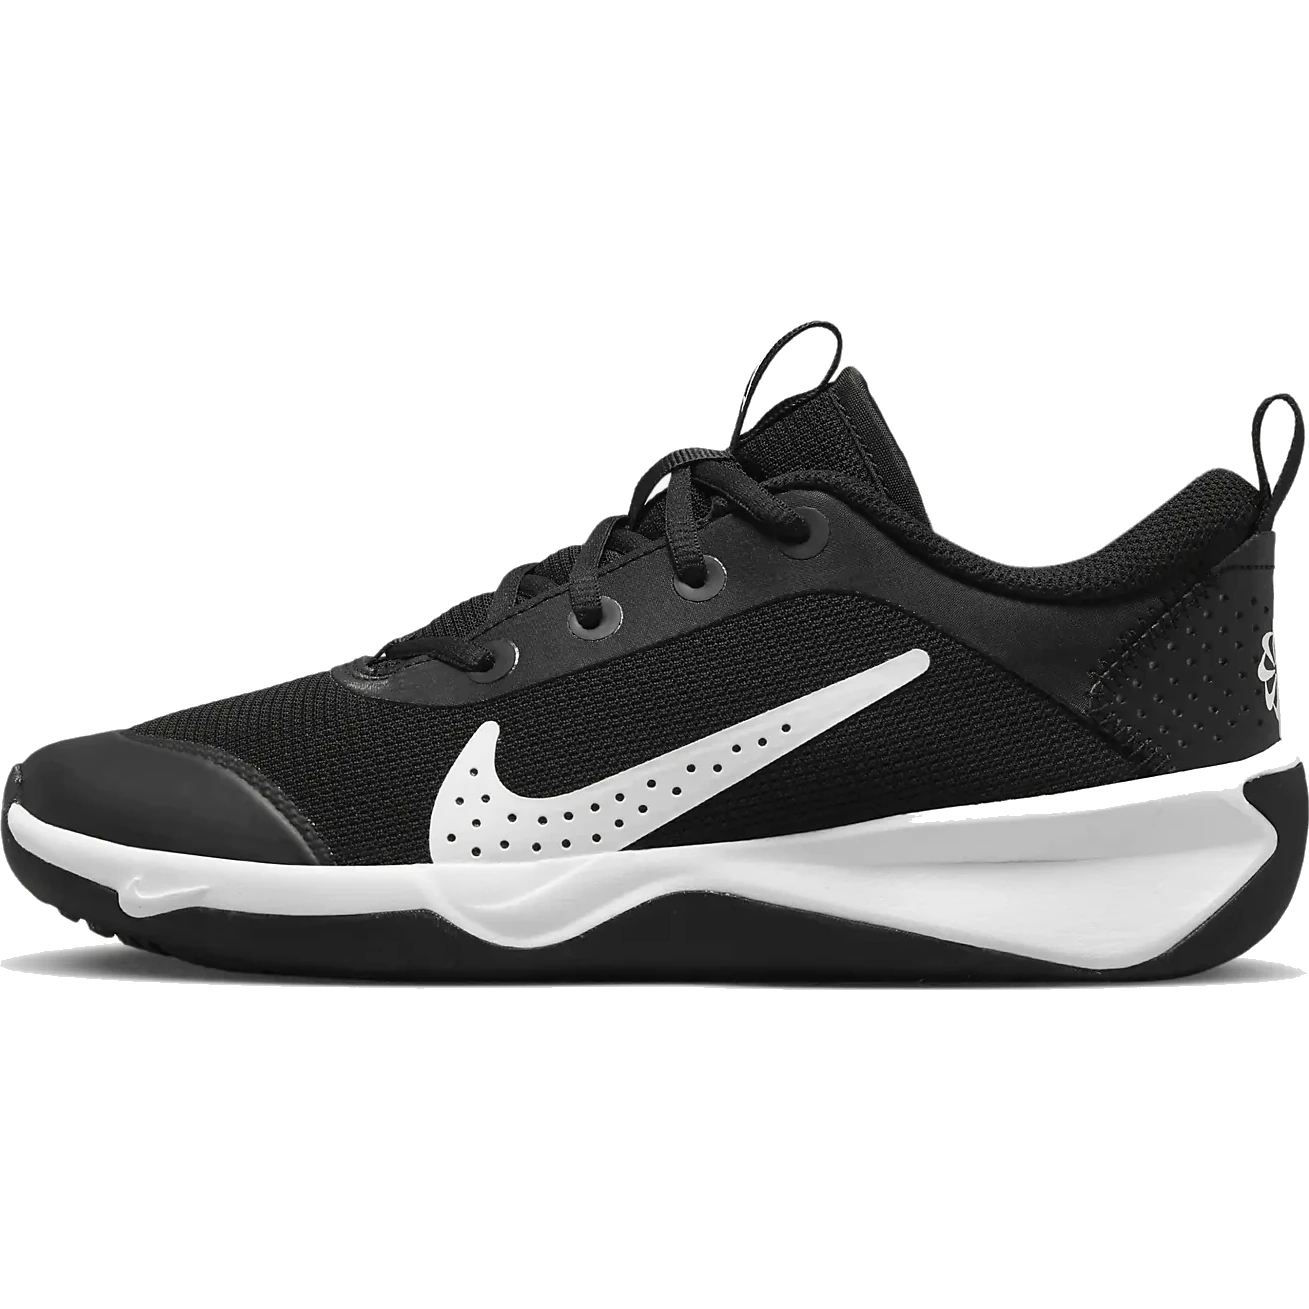 Immagine prodotto da Nike Scarpe Fitness Bambini - Omni Multi-Court - nero/bianco DM9027-002